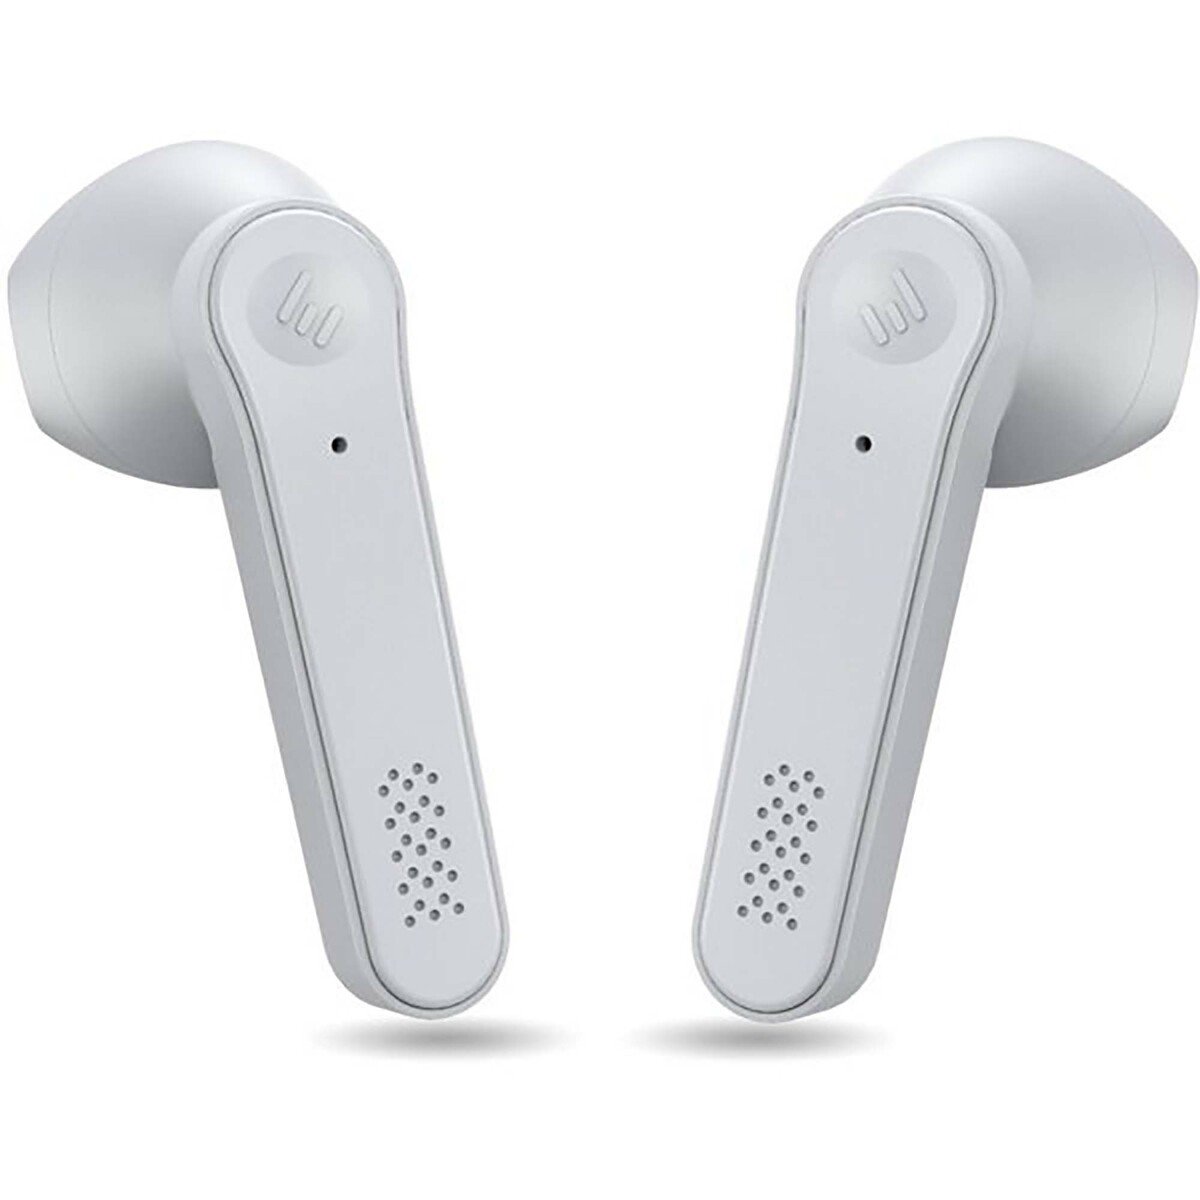 Xcell Soul Pro 5 In Ear True Wireless Earbuds White